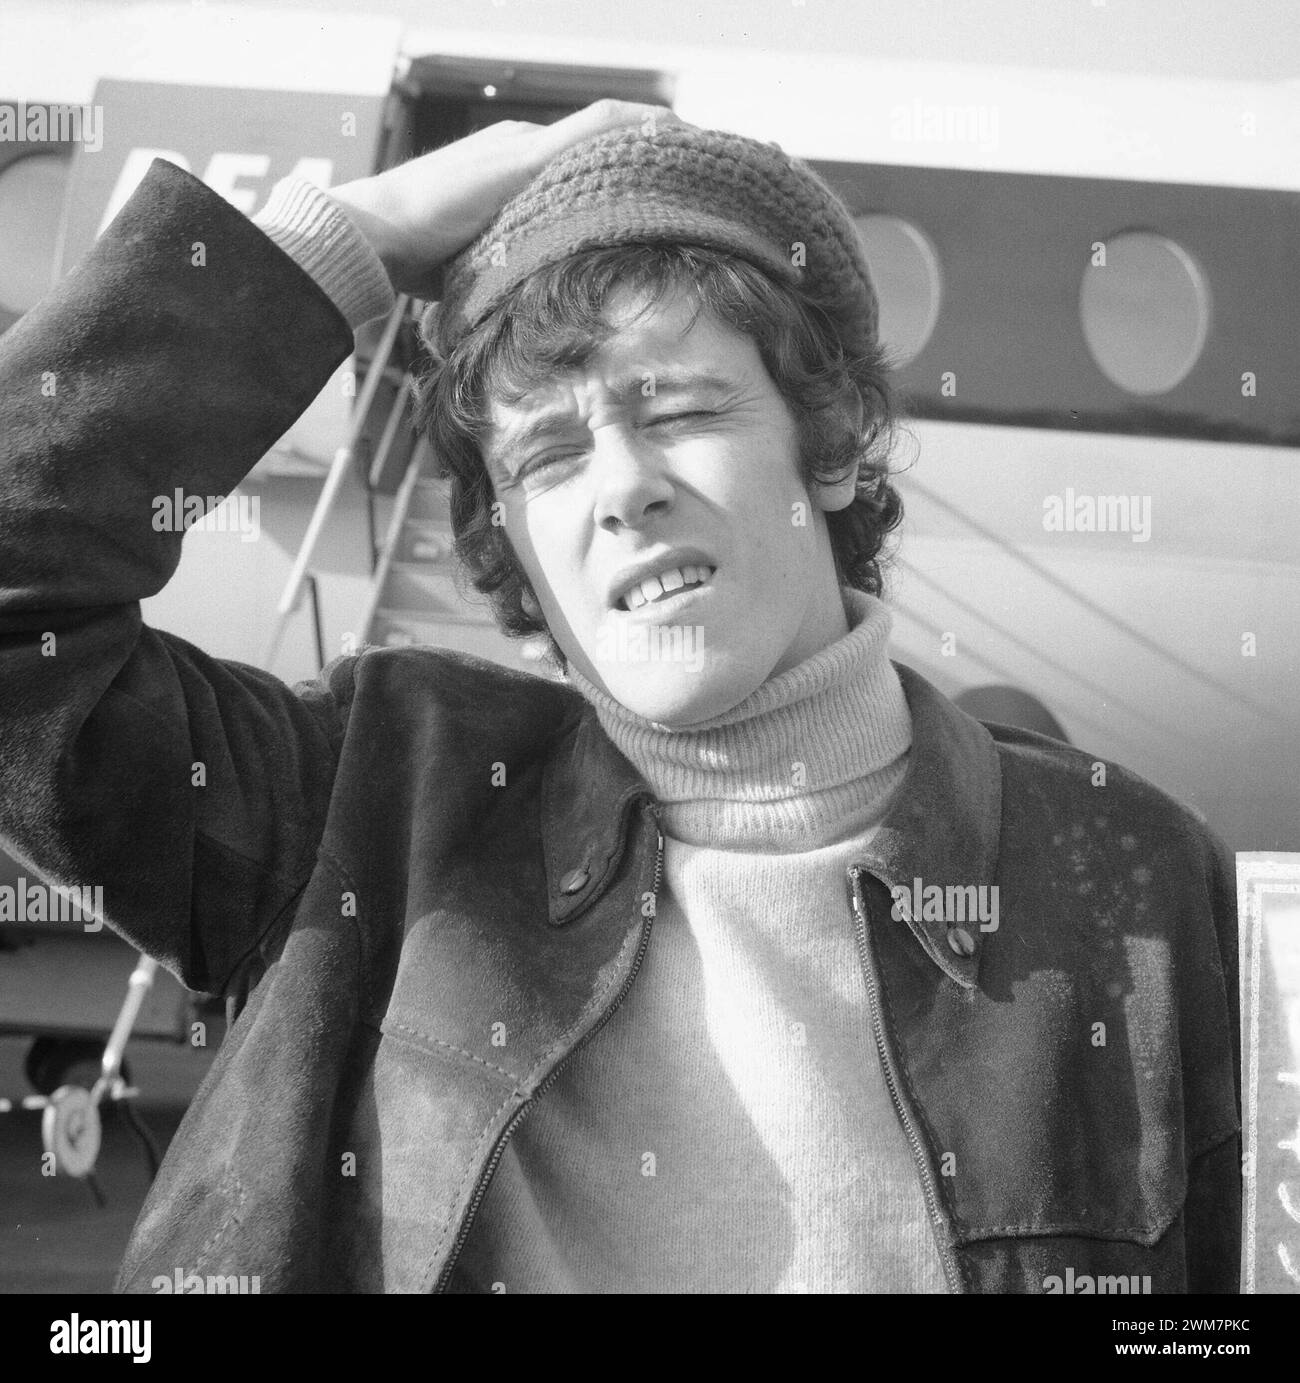 3 février 1966. Amsterdam, pays-Bas. Portrait à l'arrivée à Schiphol de Donavan. Chanteur folk écossais en visite aux pays-Bas. Banque D'Images